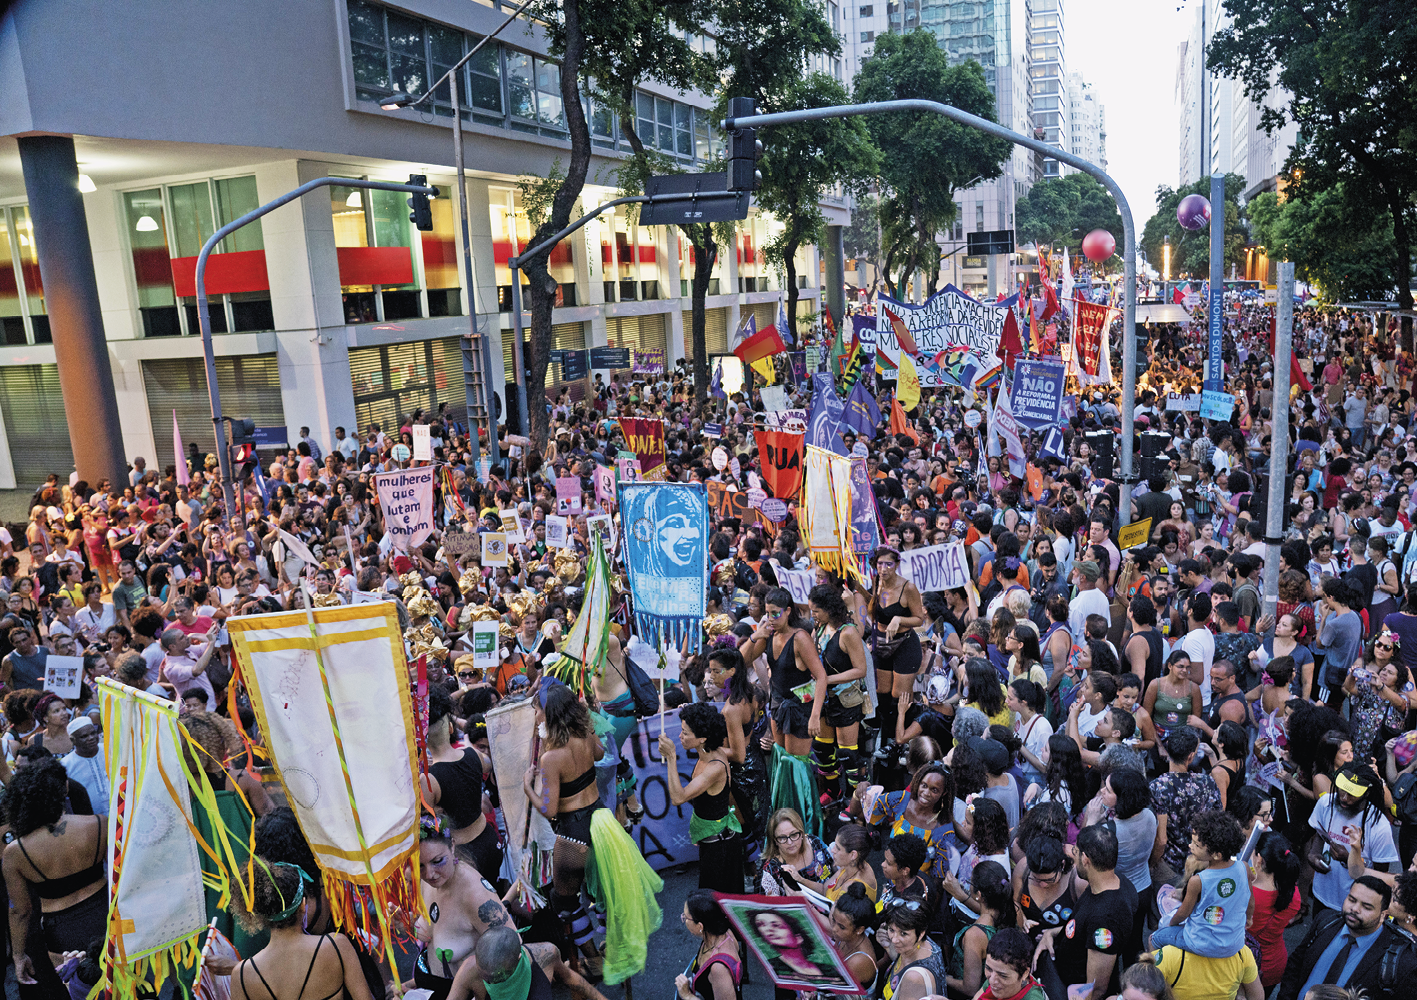 Fotografia. Vista do alto, uma multidão em uma manifestação em uma avenida larga. As pessoas carregam bandeiras, estandartes e faixas.  à esquerda, vista parcial de um prédio branco com janelas de vidro.